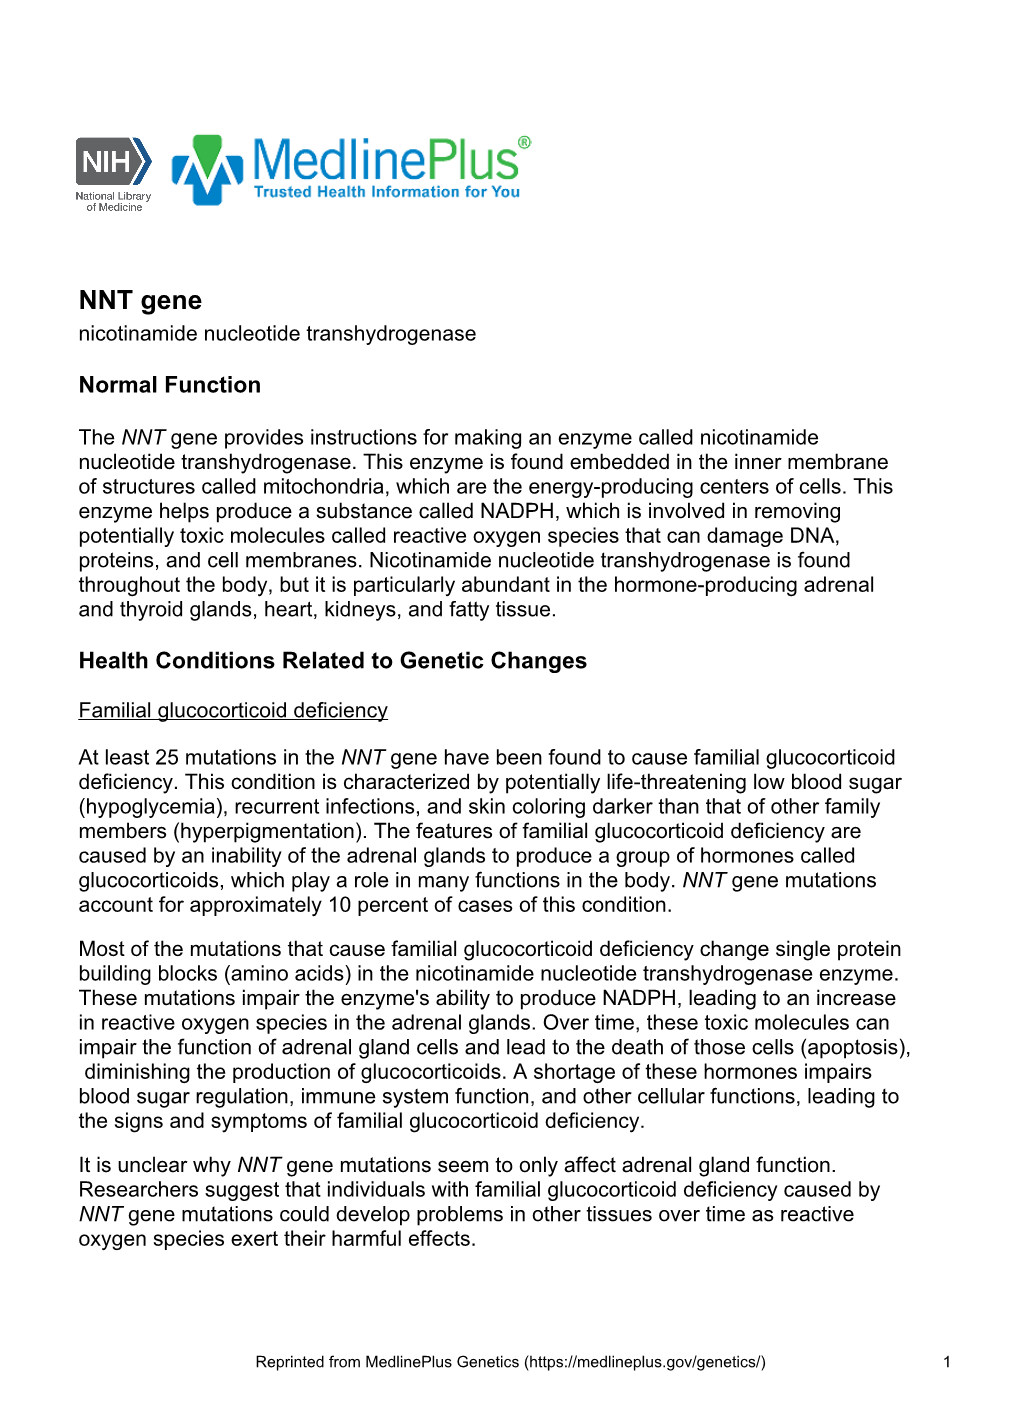 NNT Gene Nicotinamide Nucleotide Transhydrogenase